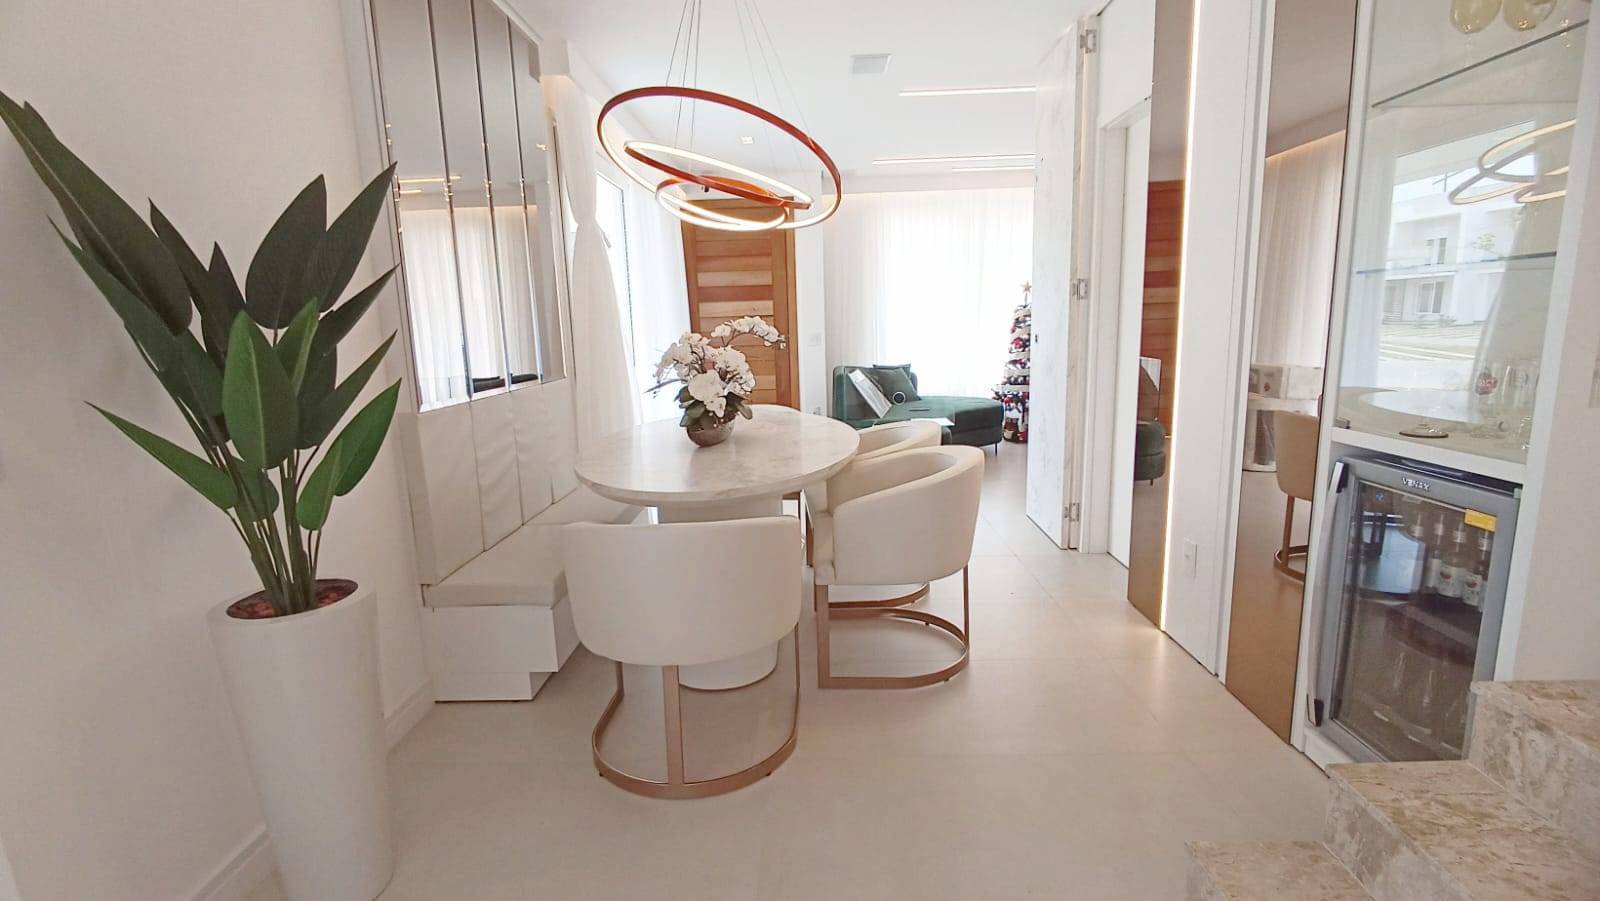 Casa em Condomínio 4 dormitórios para venda, Condomínio Murano - Zona Nova em Capão da Canoa | Ref.: 5470